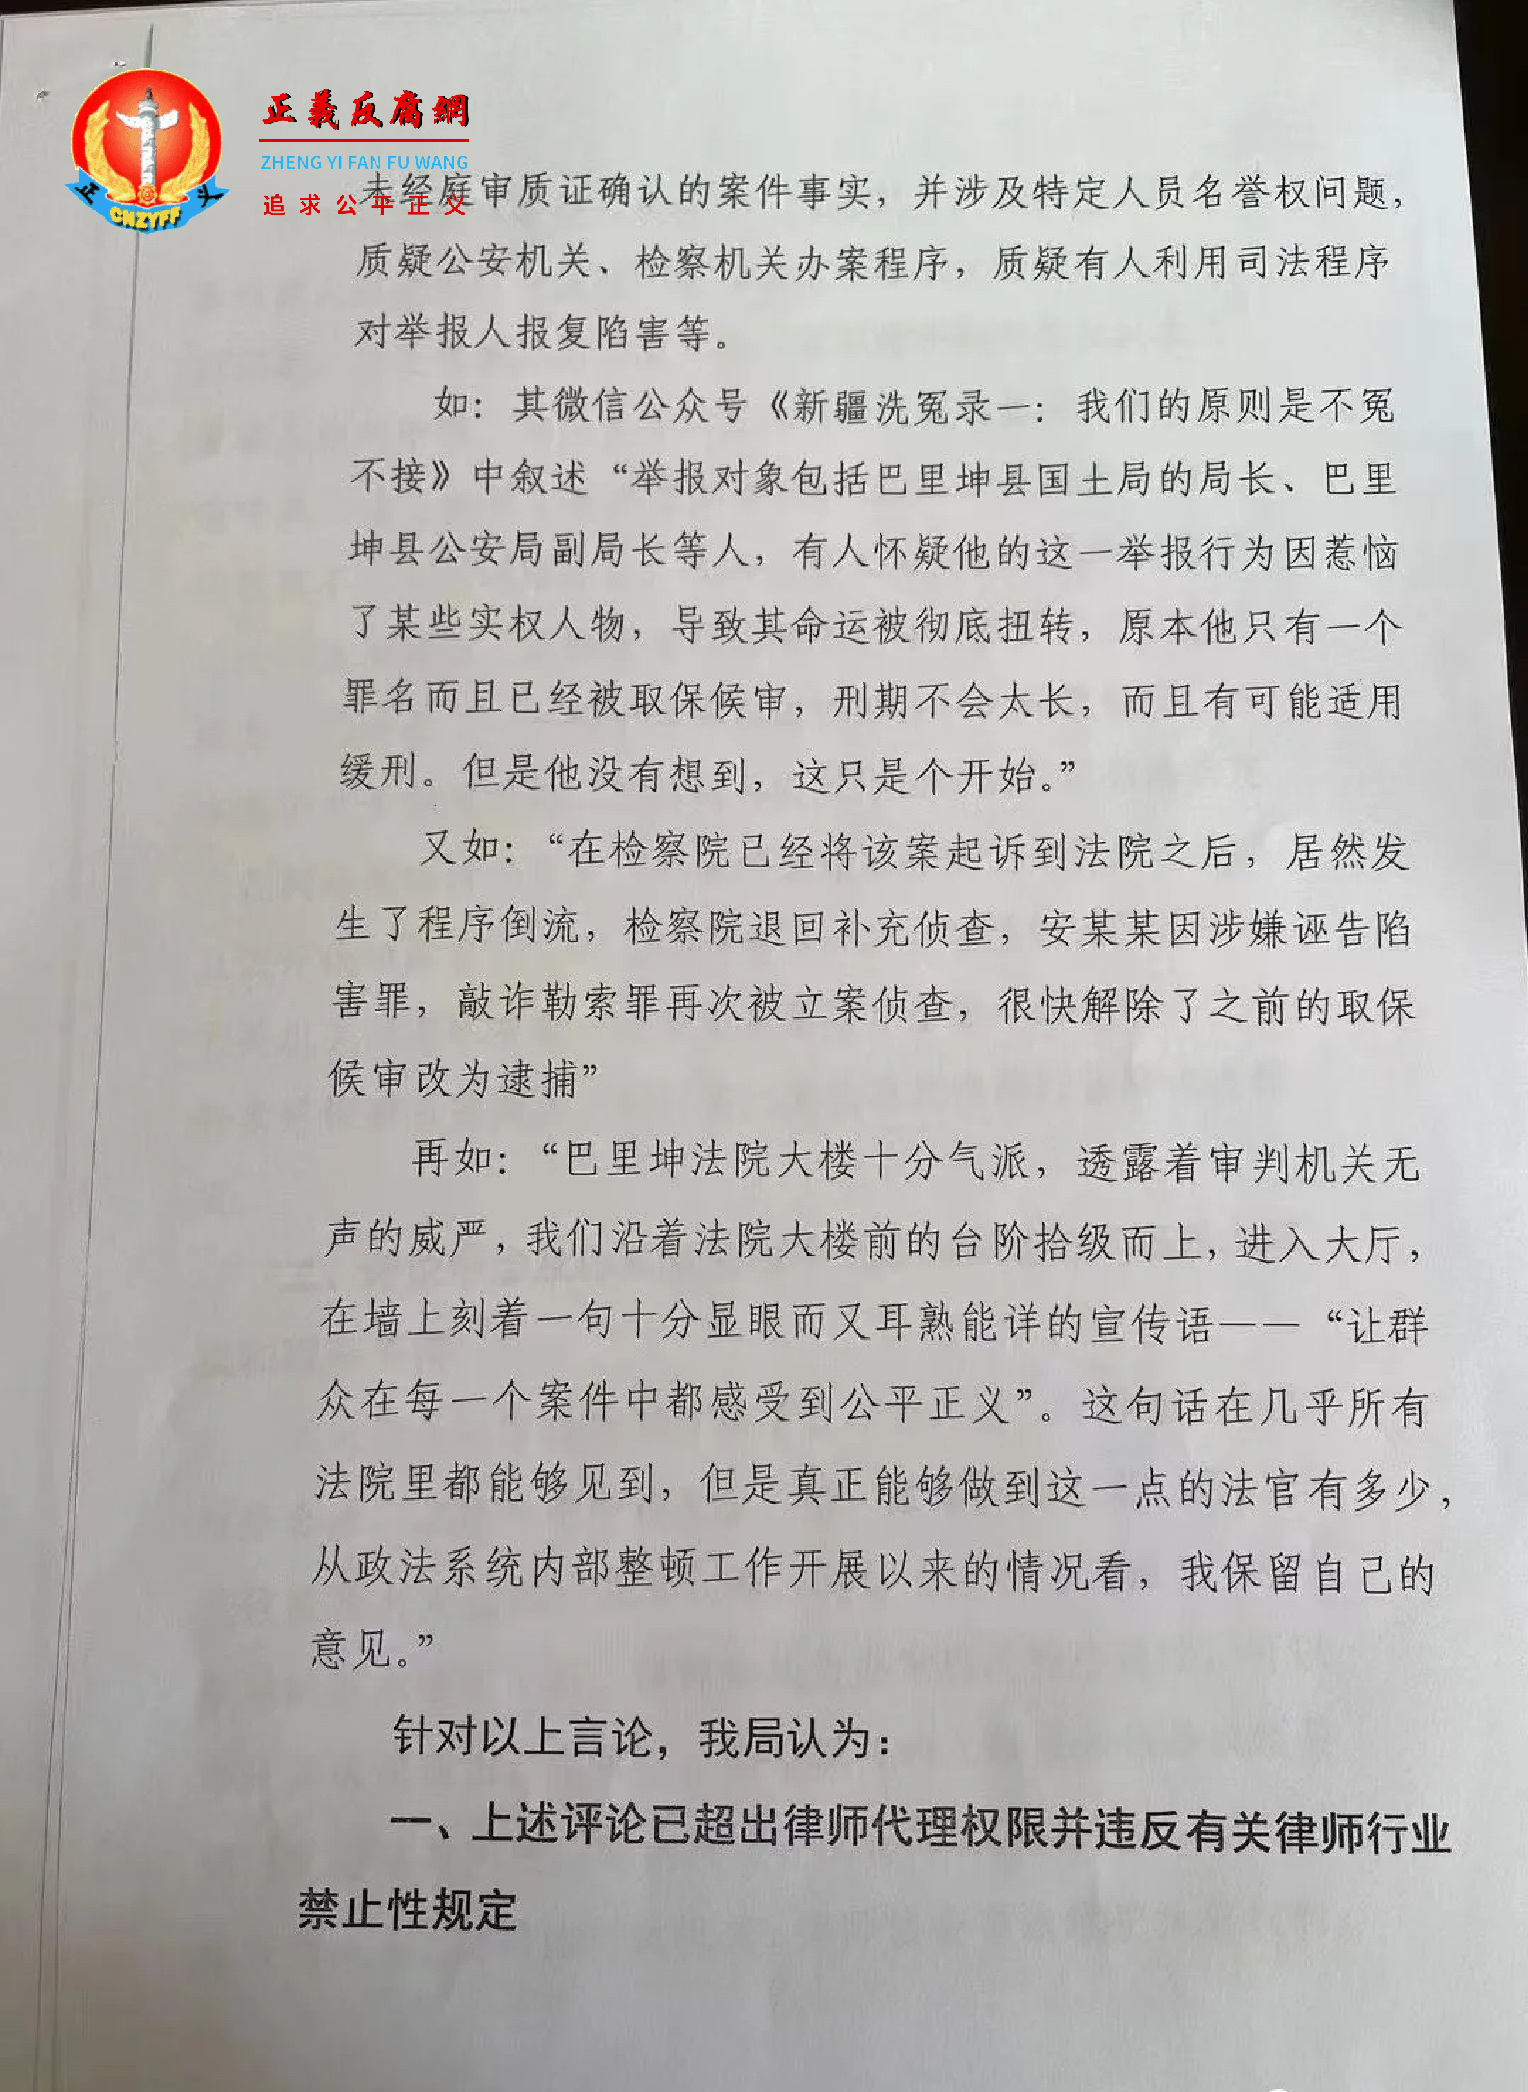 关于“吴法天”等律师“天下说法”微信公众号发布文章舆情的函第二页.png